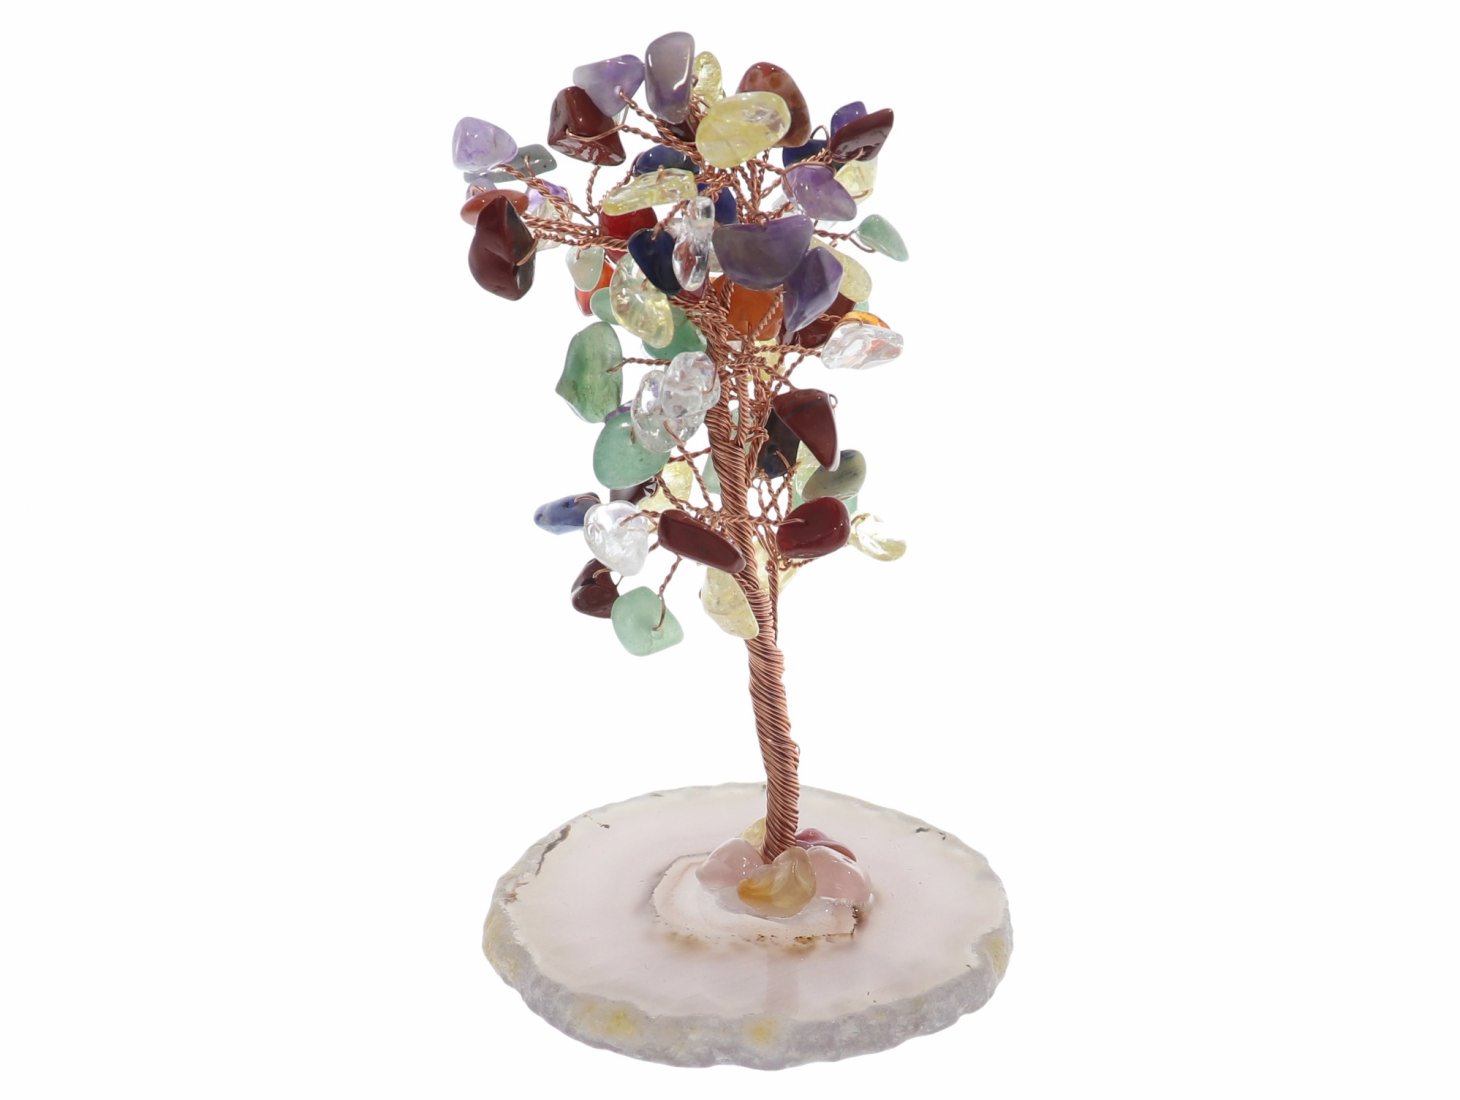 Unikat - Multicolor Baum mit Edelstein Splittern und Achat Scheibe Dekoration 41699